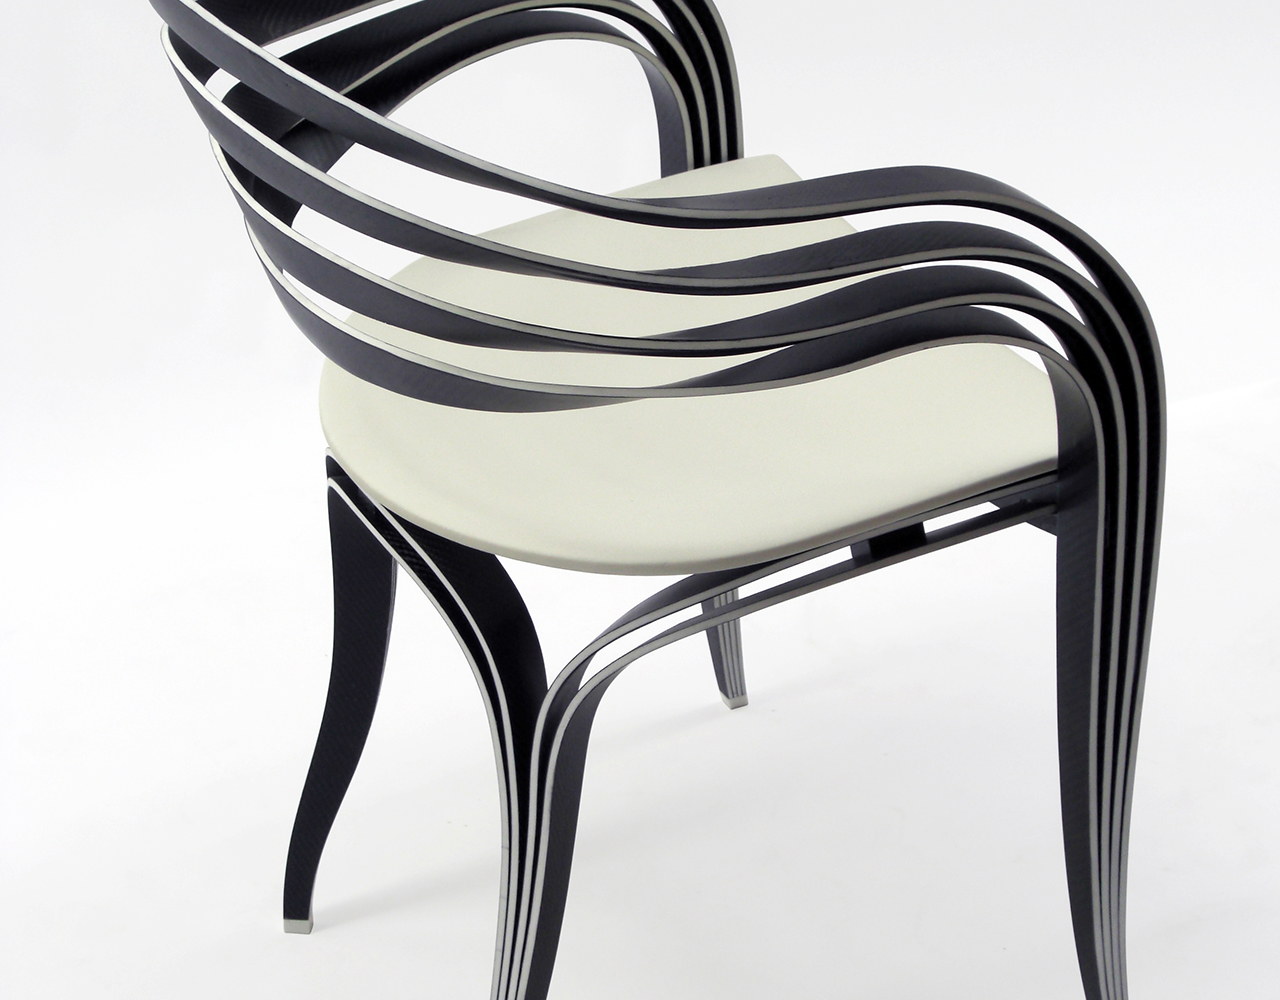 PHOTO: © Pierre Renart
Genèse, Fauteuil en fibre de carbone, assise gainée de tissu,
H 80 x L 54 x l 5 3 cm, série limitée